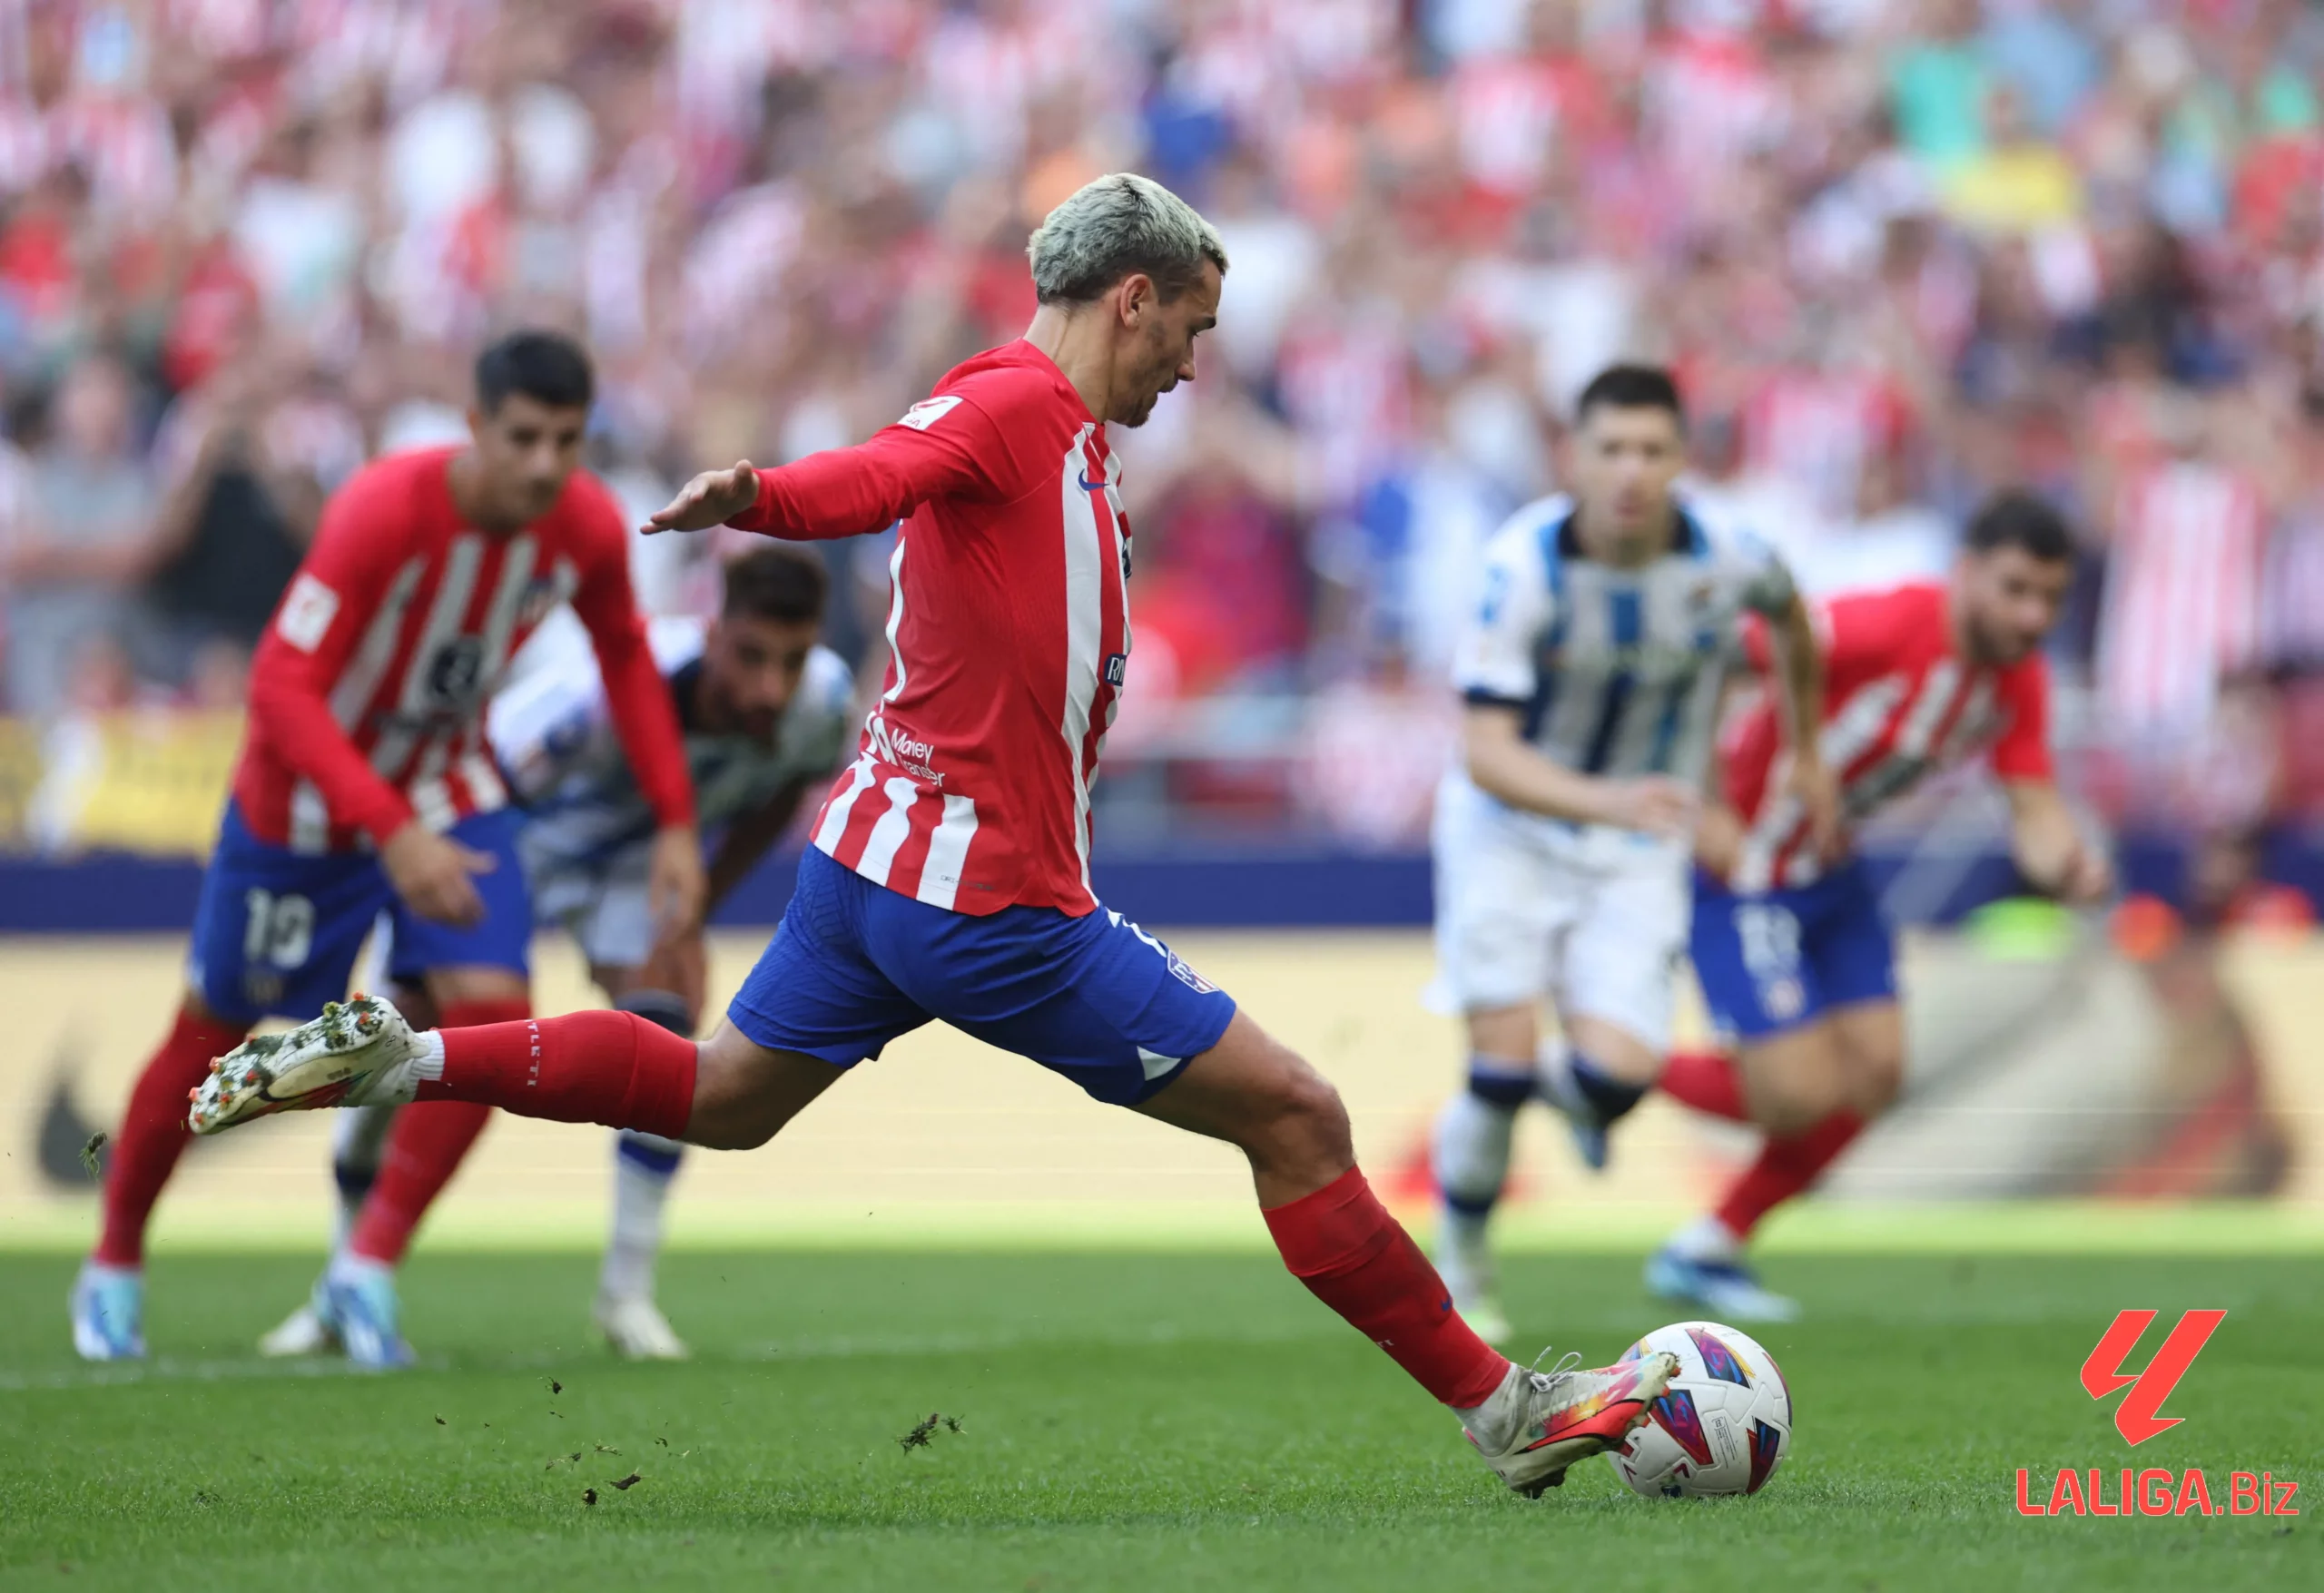 Tổng hợp diễn biến chính trận Atlético Madrid gặp Sociedad và kết quả Atlético Madrid vs Sociedad: